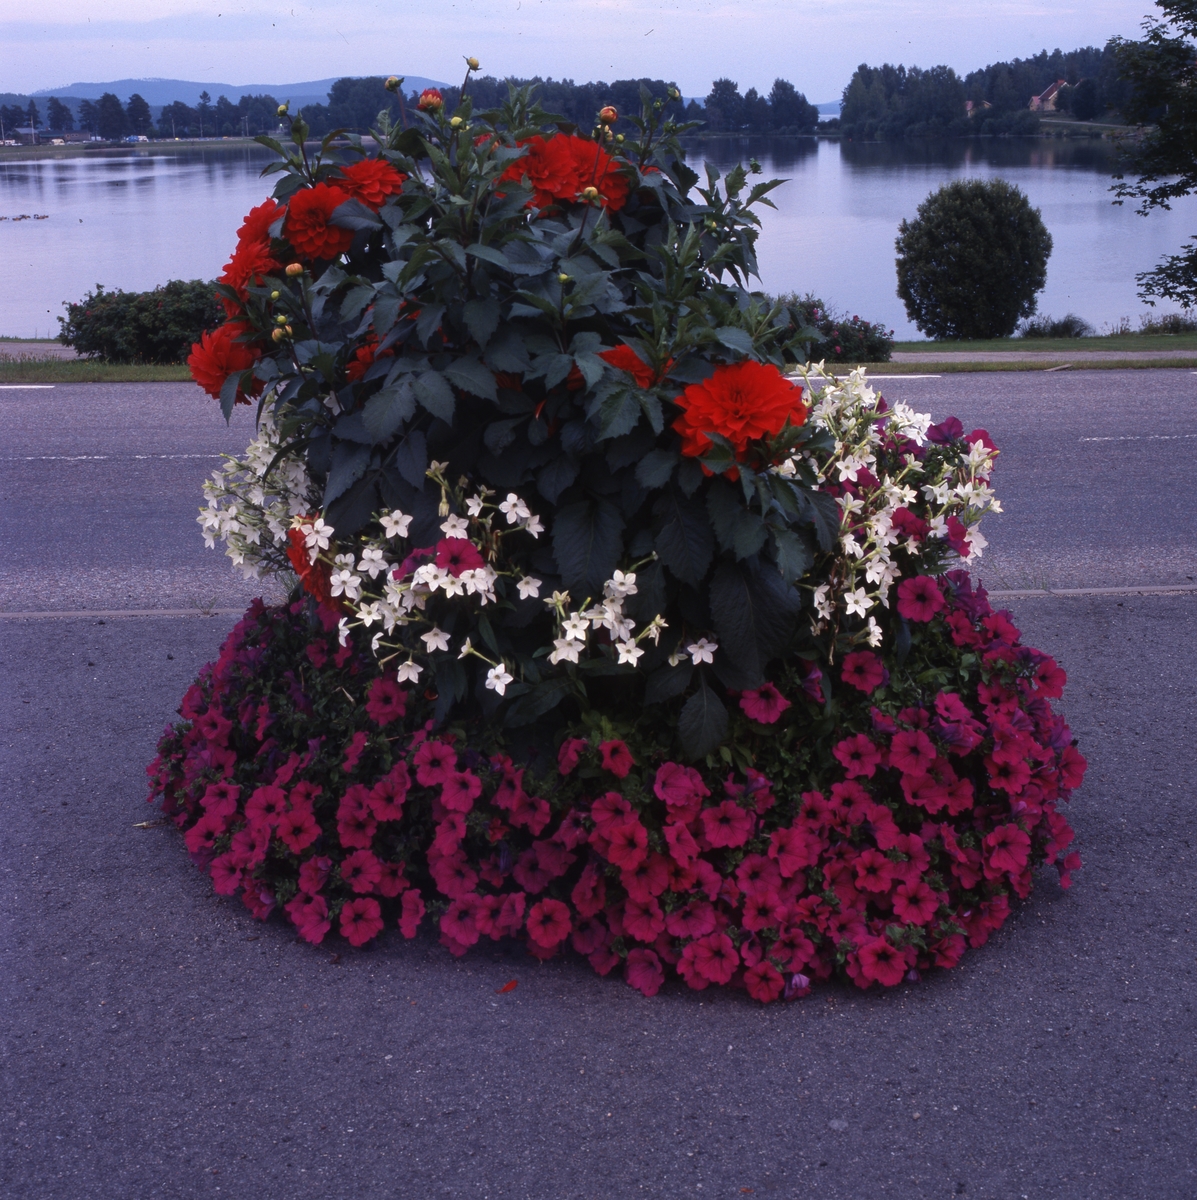 Praktfull blomsterurna med sjö i bakgrunden, Bollnäs 25/8 2001.